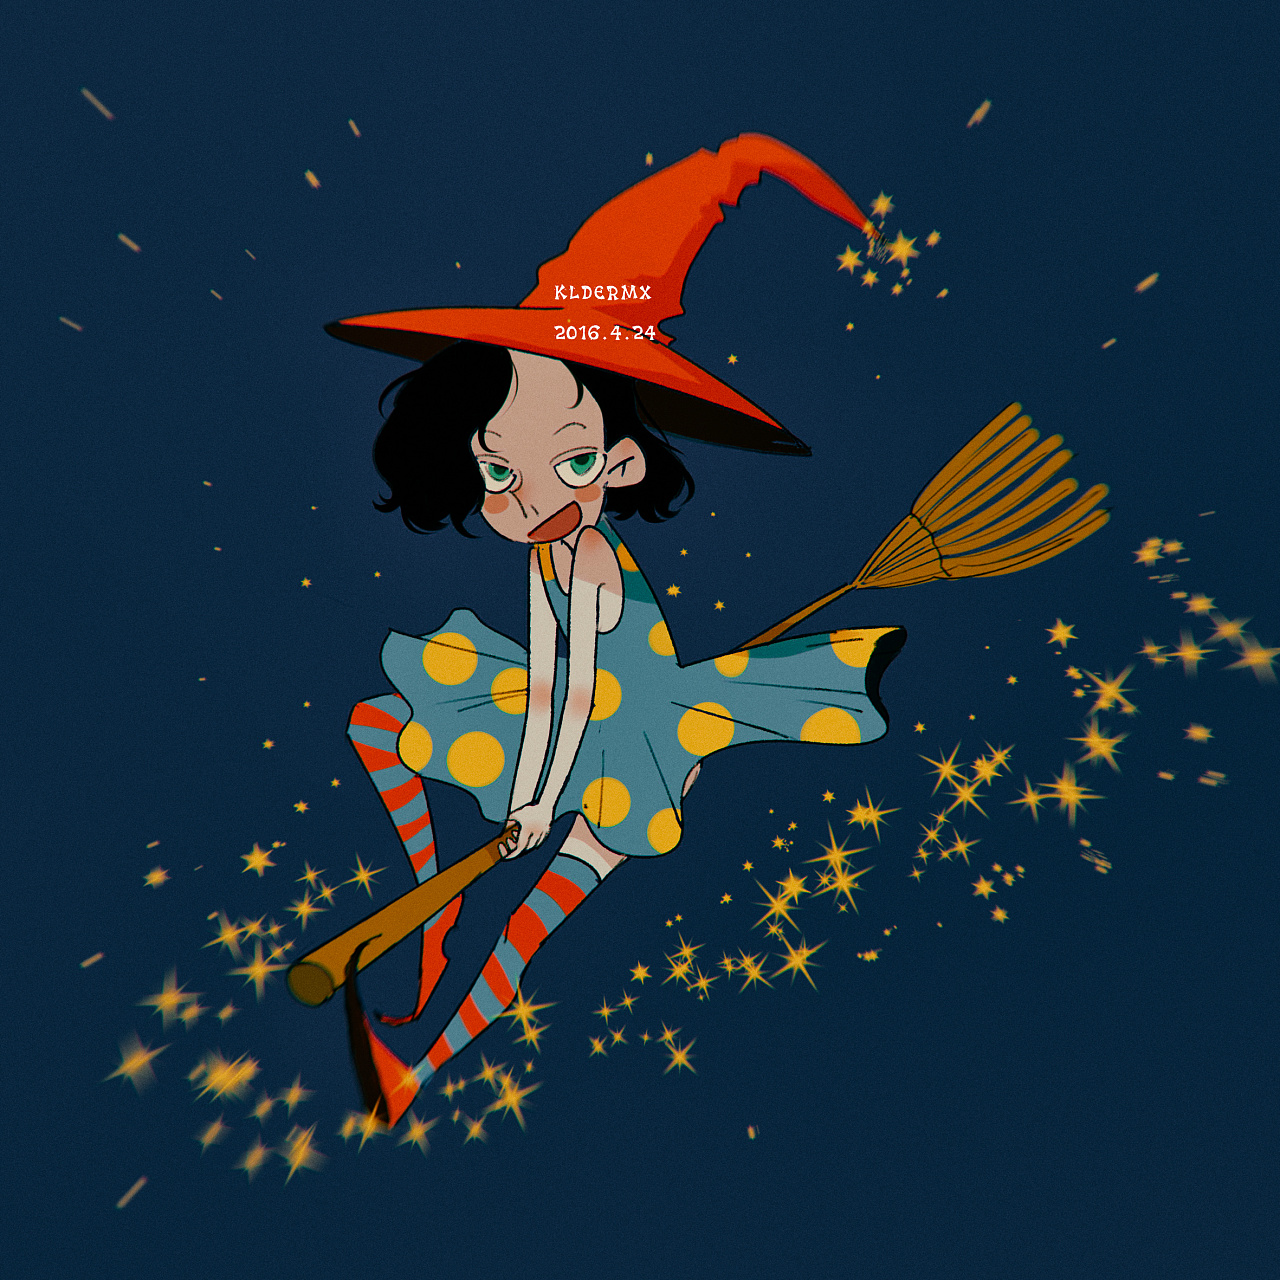 万圣节 服装巫婆飞行的小女孩在横跨天空的一把笤帚 库存照片. 图片 包括有 投反对票, 月亮, 礼服, 自治权 - 128418808